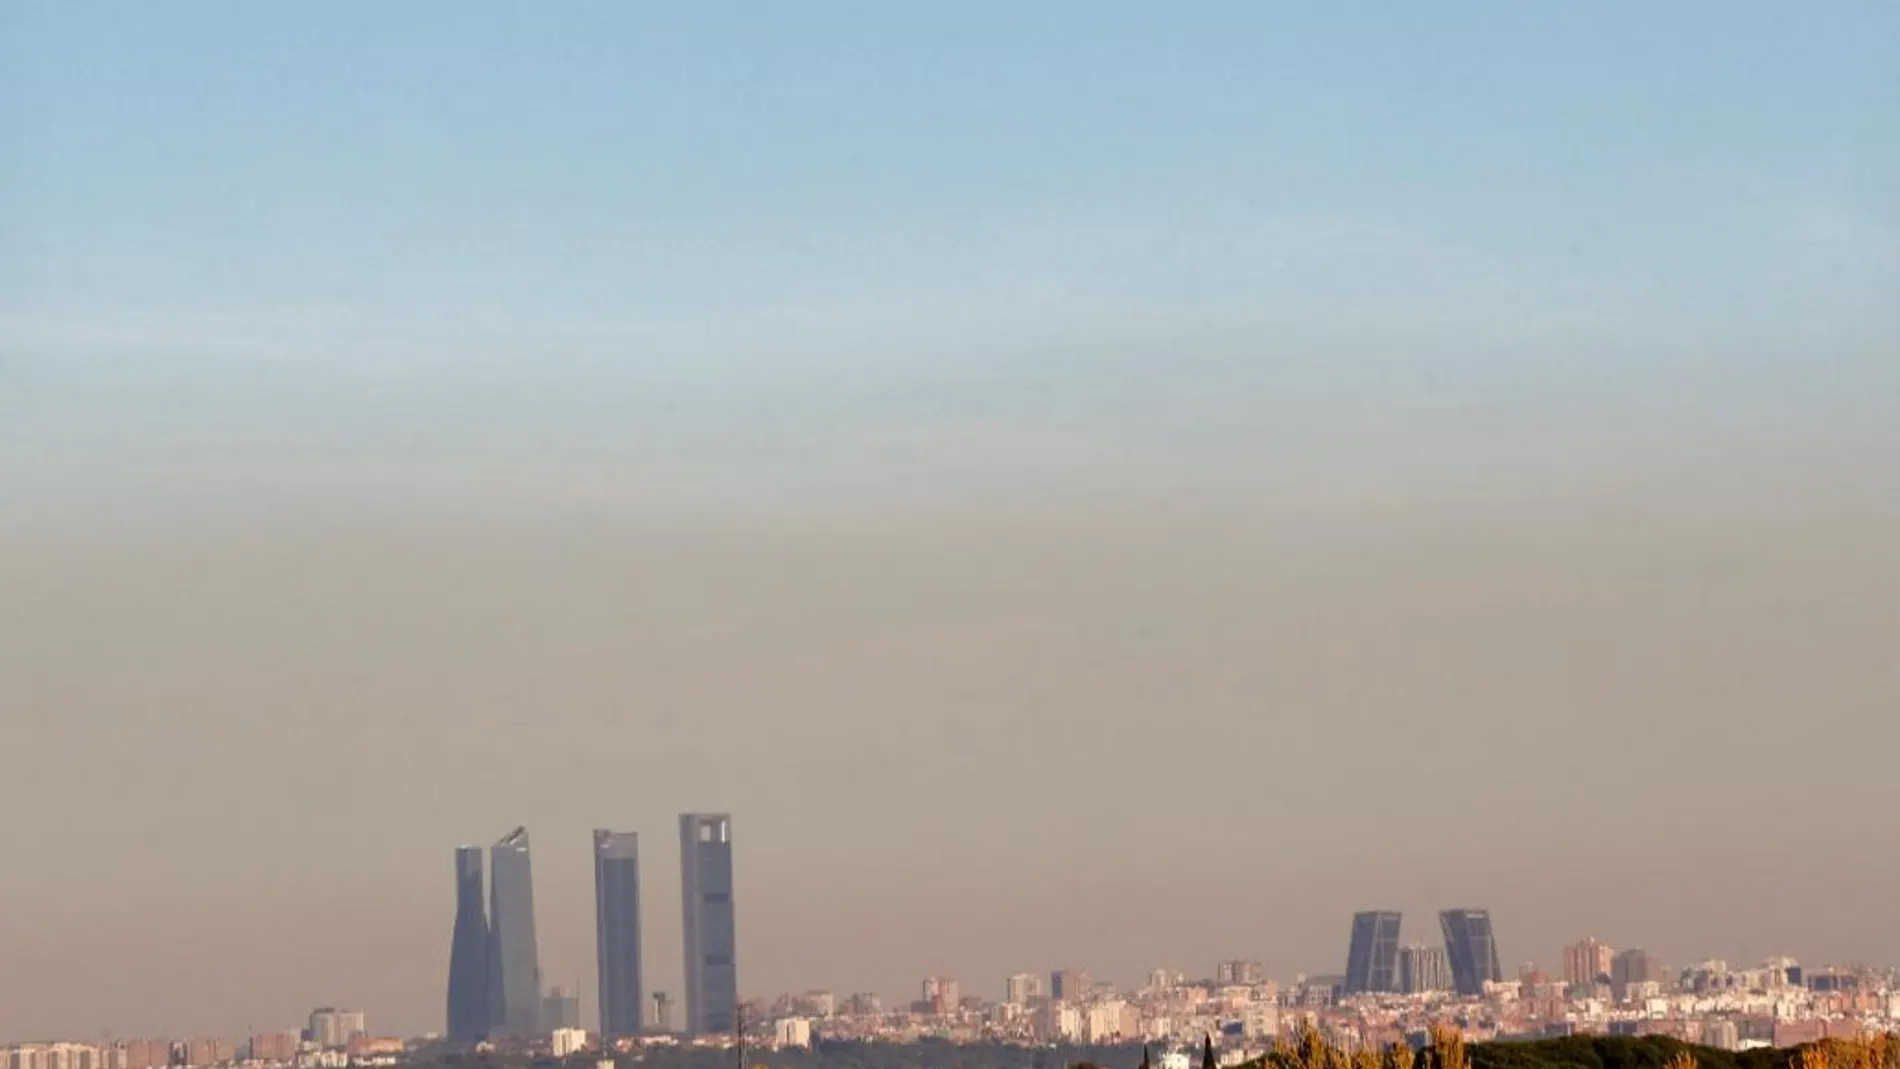 Madrid bajo un manto de polución, en una imagen tomada el pasado domingo 19 de noviembre